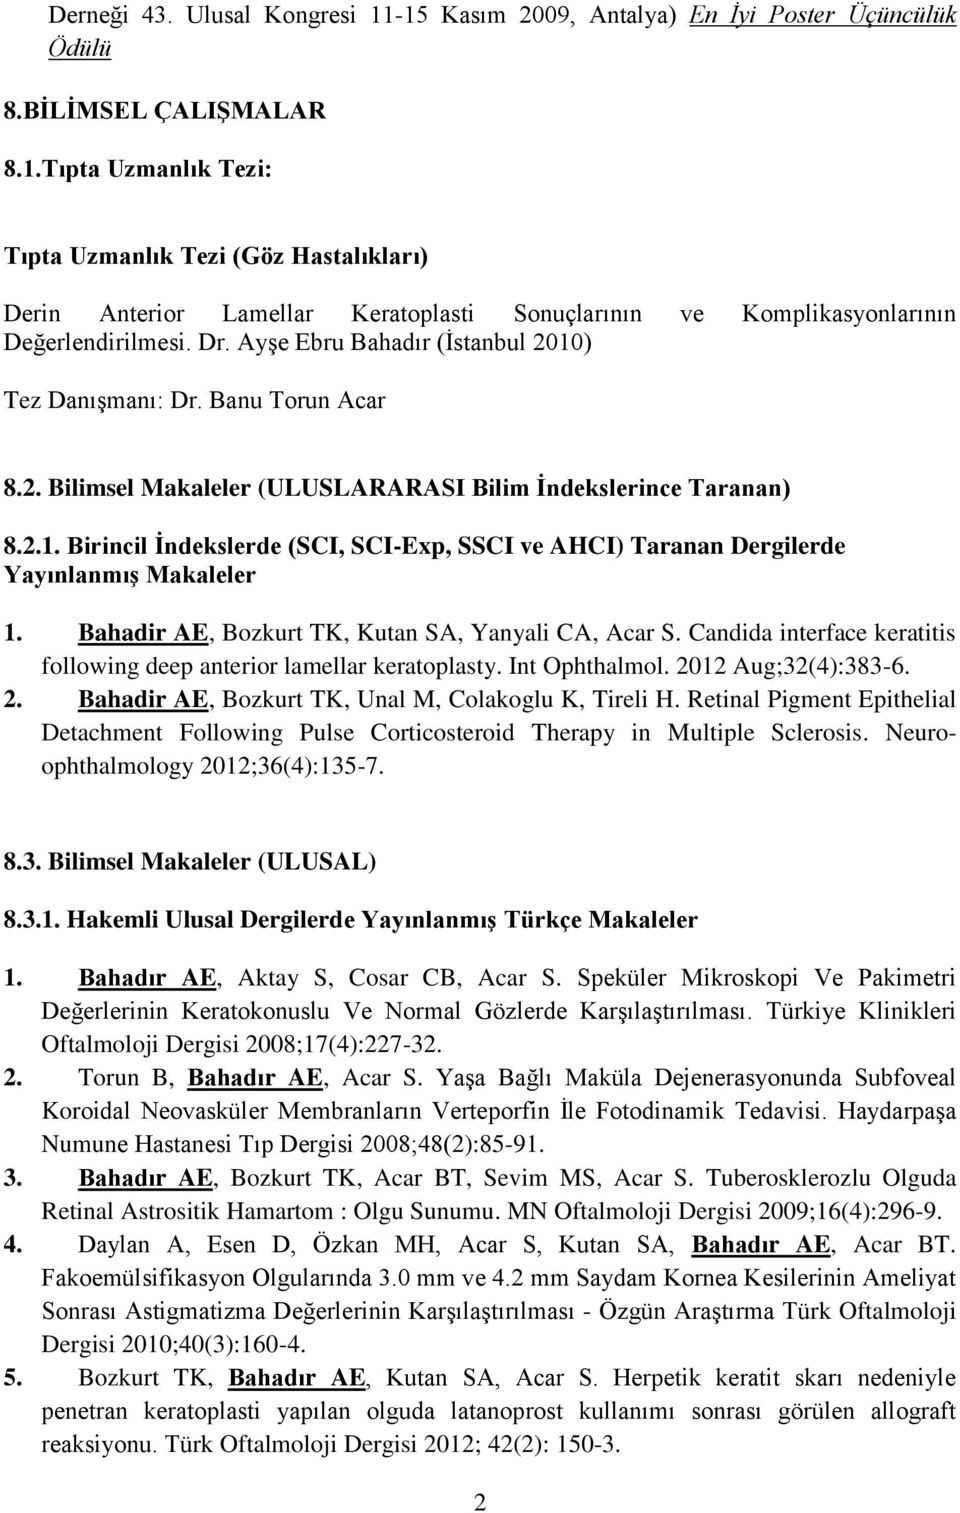 Bahadir AE, Bozkurt TK, Kutan SA, Yanyali CA, Acar S. Candida interface keratitis following deep anterior lamellar keratoplasty. Int Ophthalmol. 20